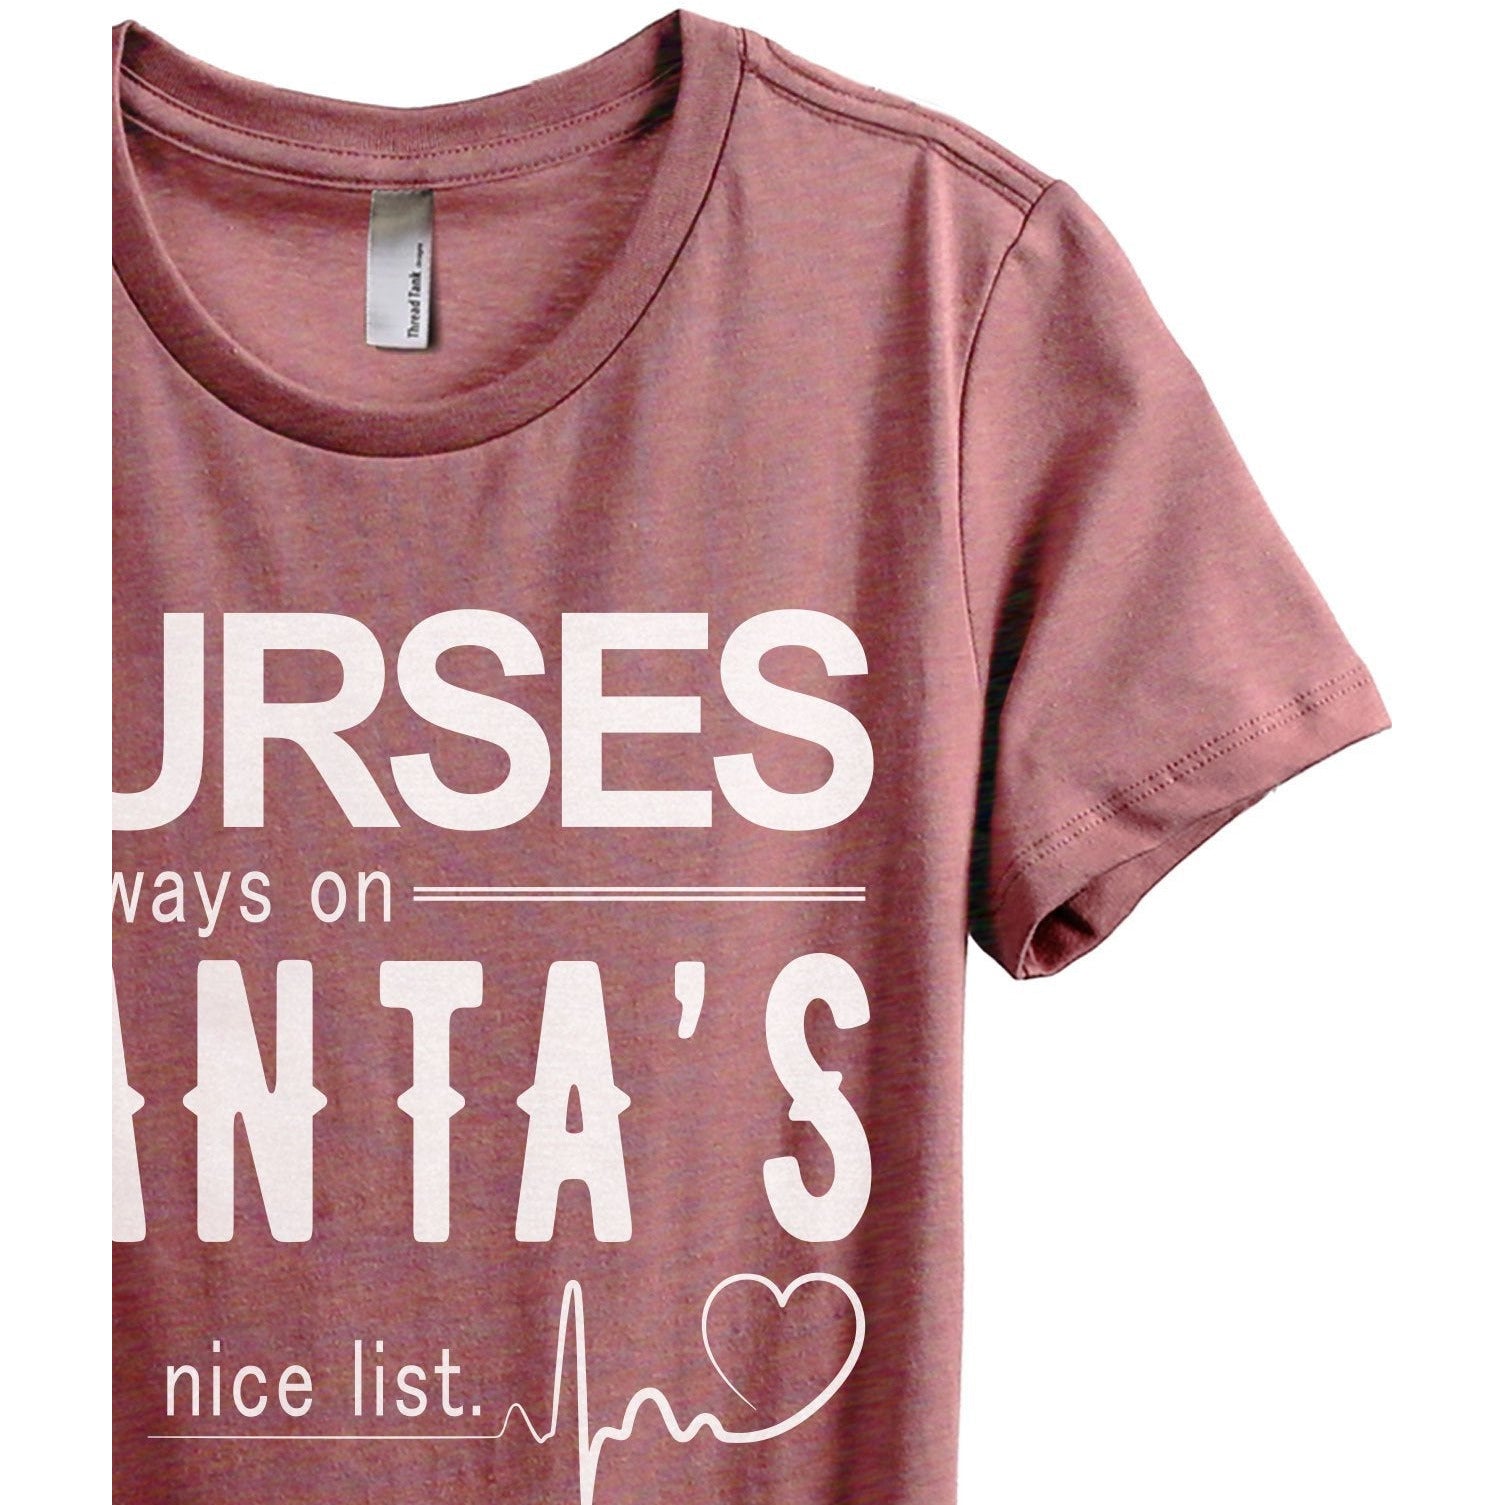 Nurses Are Always On Santa's Nice List